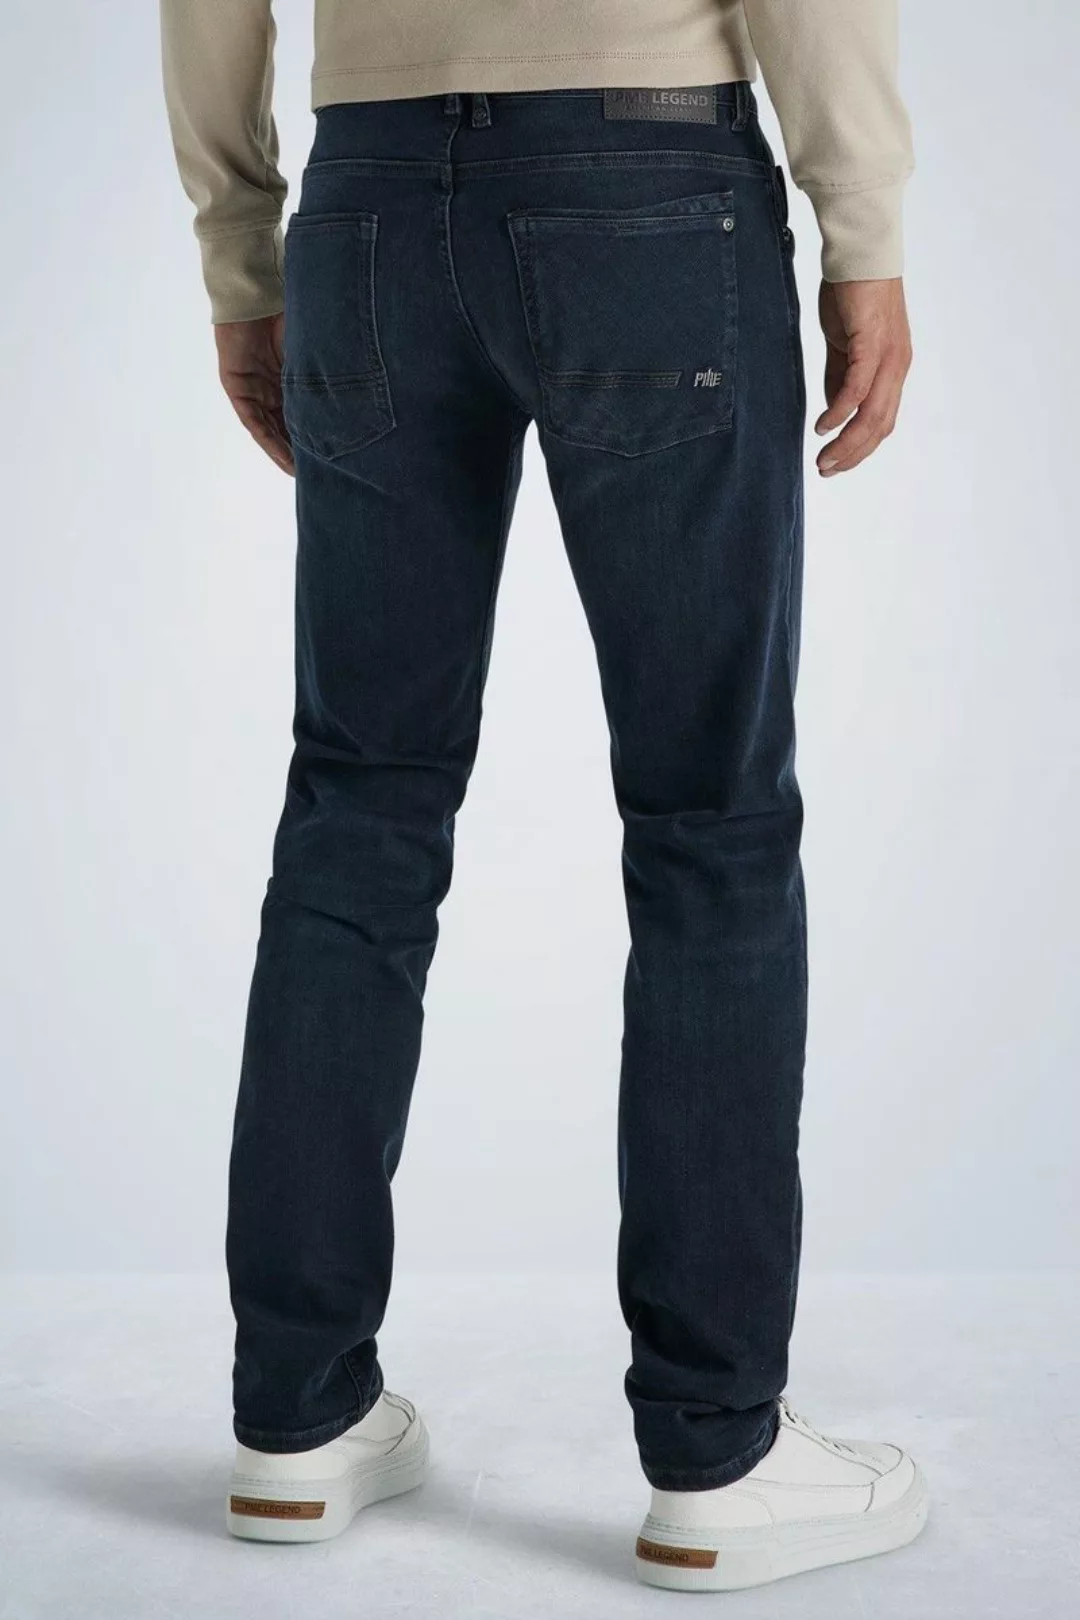 PME Legend Commander 3.0 Jeans Blau Schwarz - Größe W 34 - L 36 günstig online kaufen